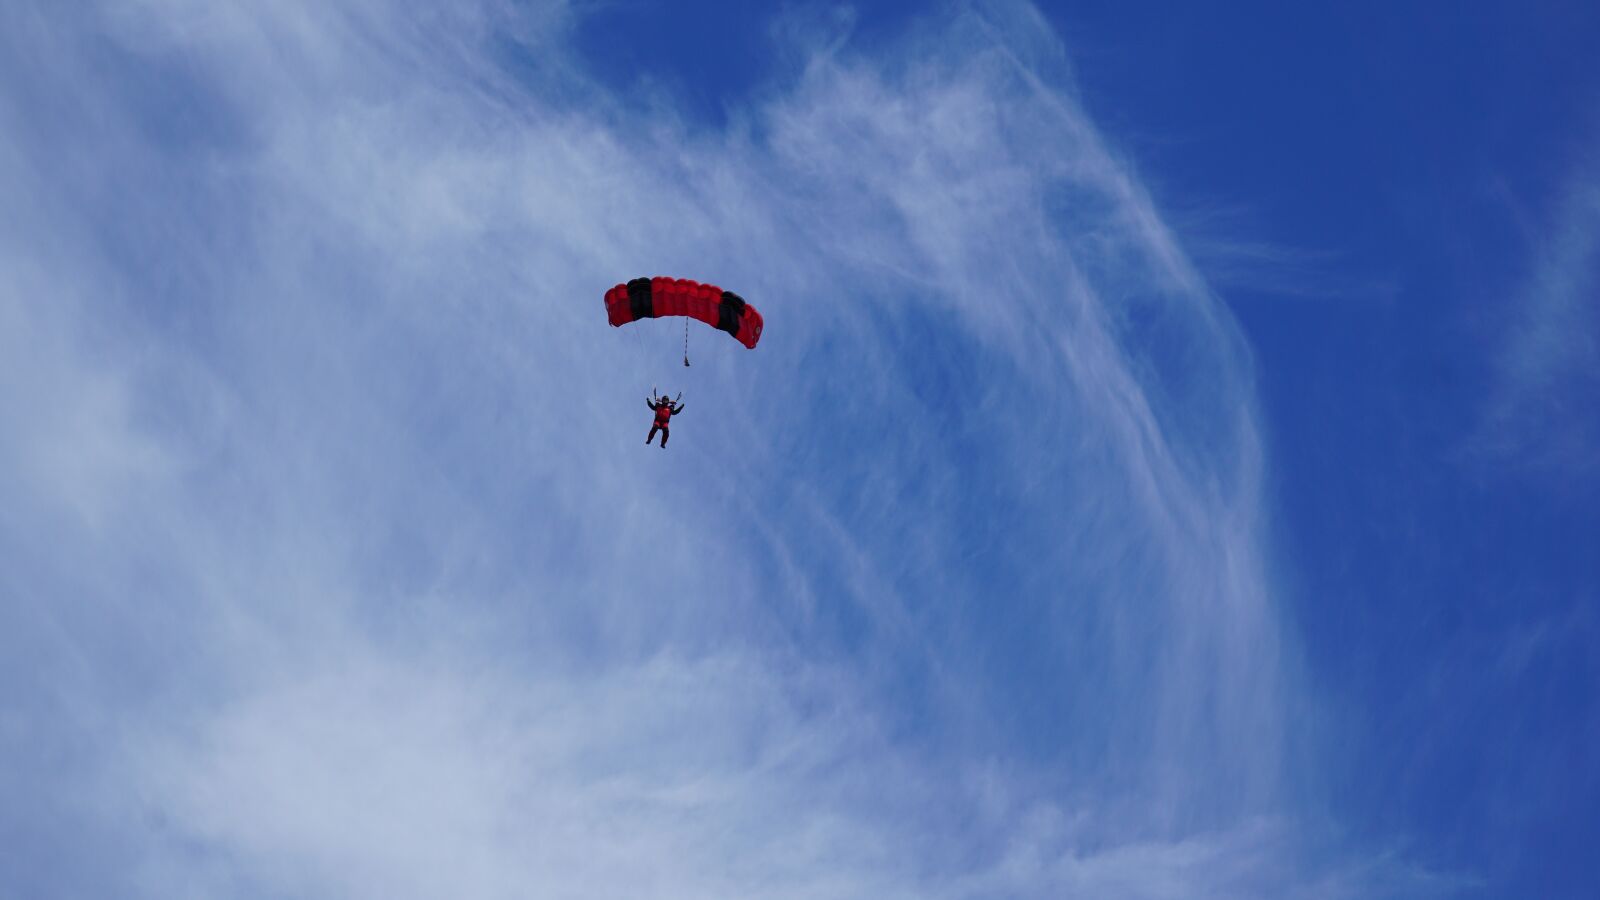 Sony a6000 + Sony E 70-350mm F4.5-6.3 G OSS sample photo. Parachutist, parachute, sky photography